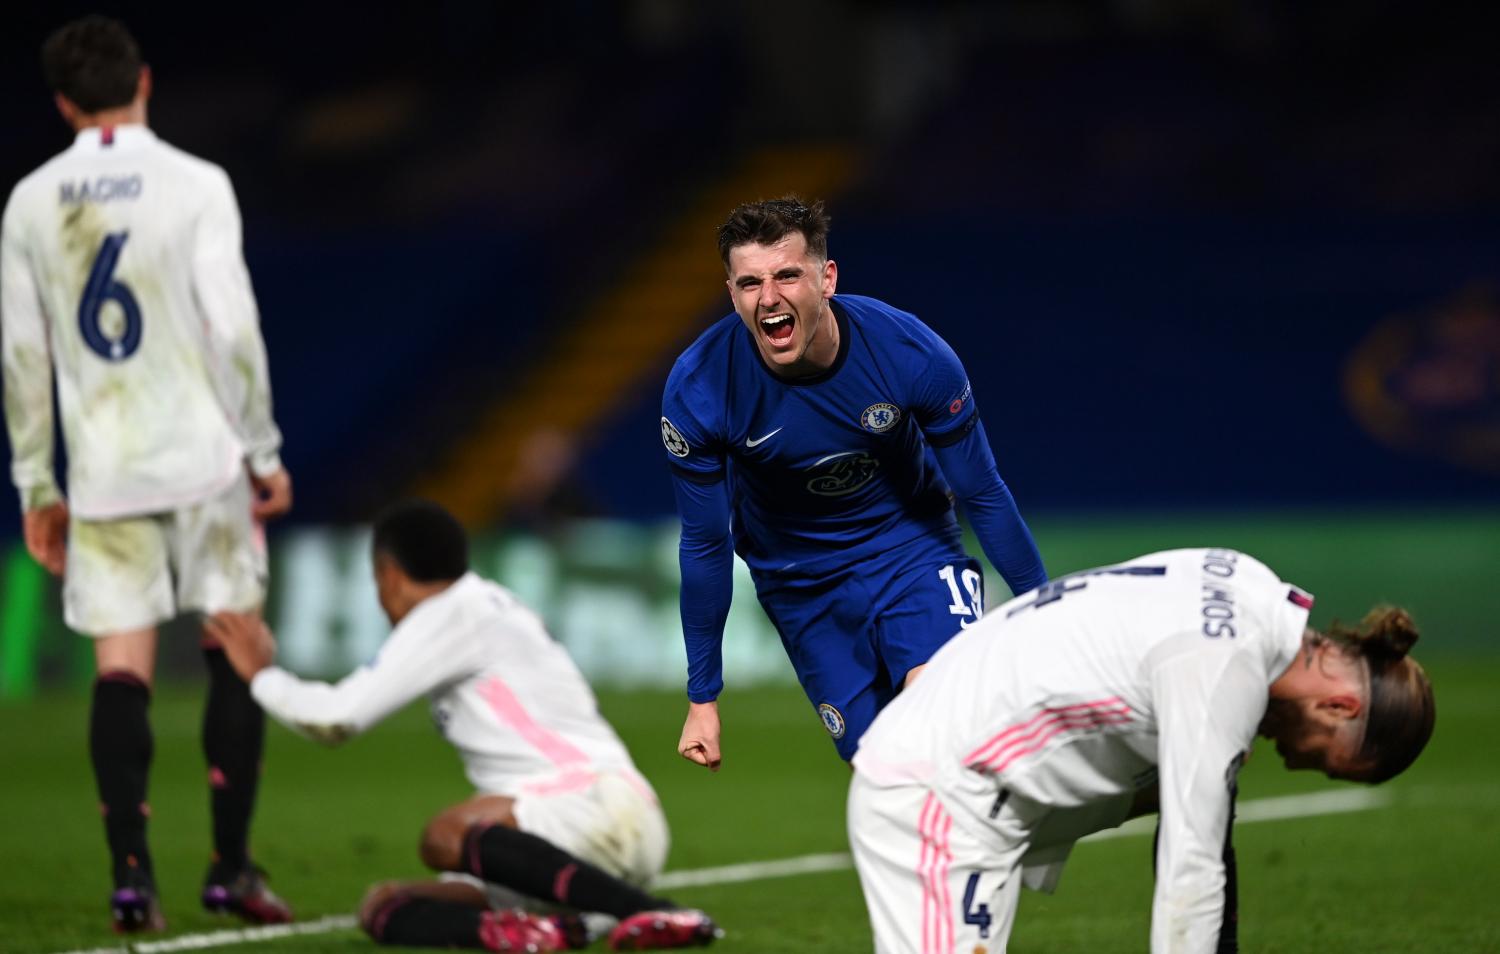 SENTENCIA. Mount grita el segundo gol del Chelsea ante la impotencia de la defensa del Madrid. FOTO TOMADA DE TWITTER.COM/CHELSEAFC_SP